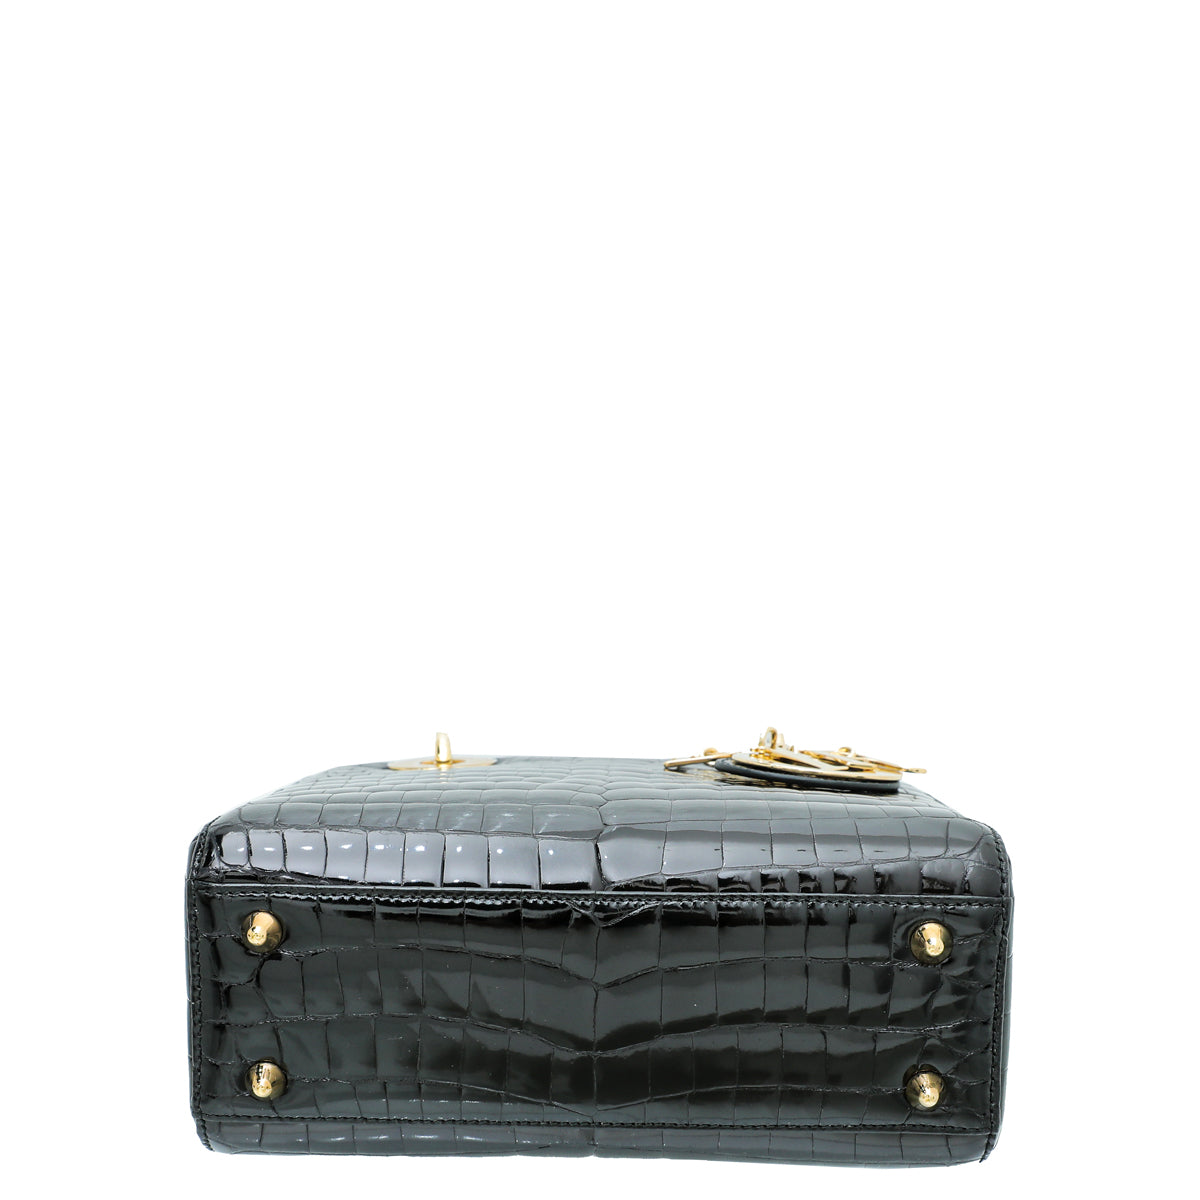 Christian Dior Crocodile Lady Dior Medium Bag